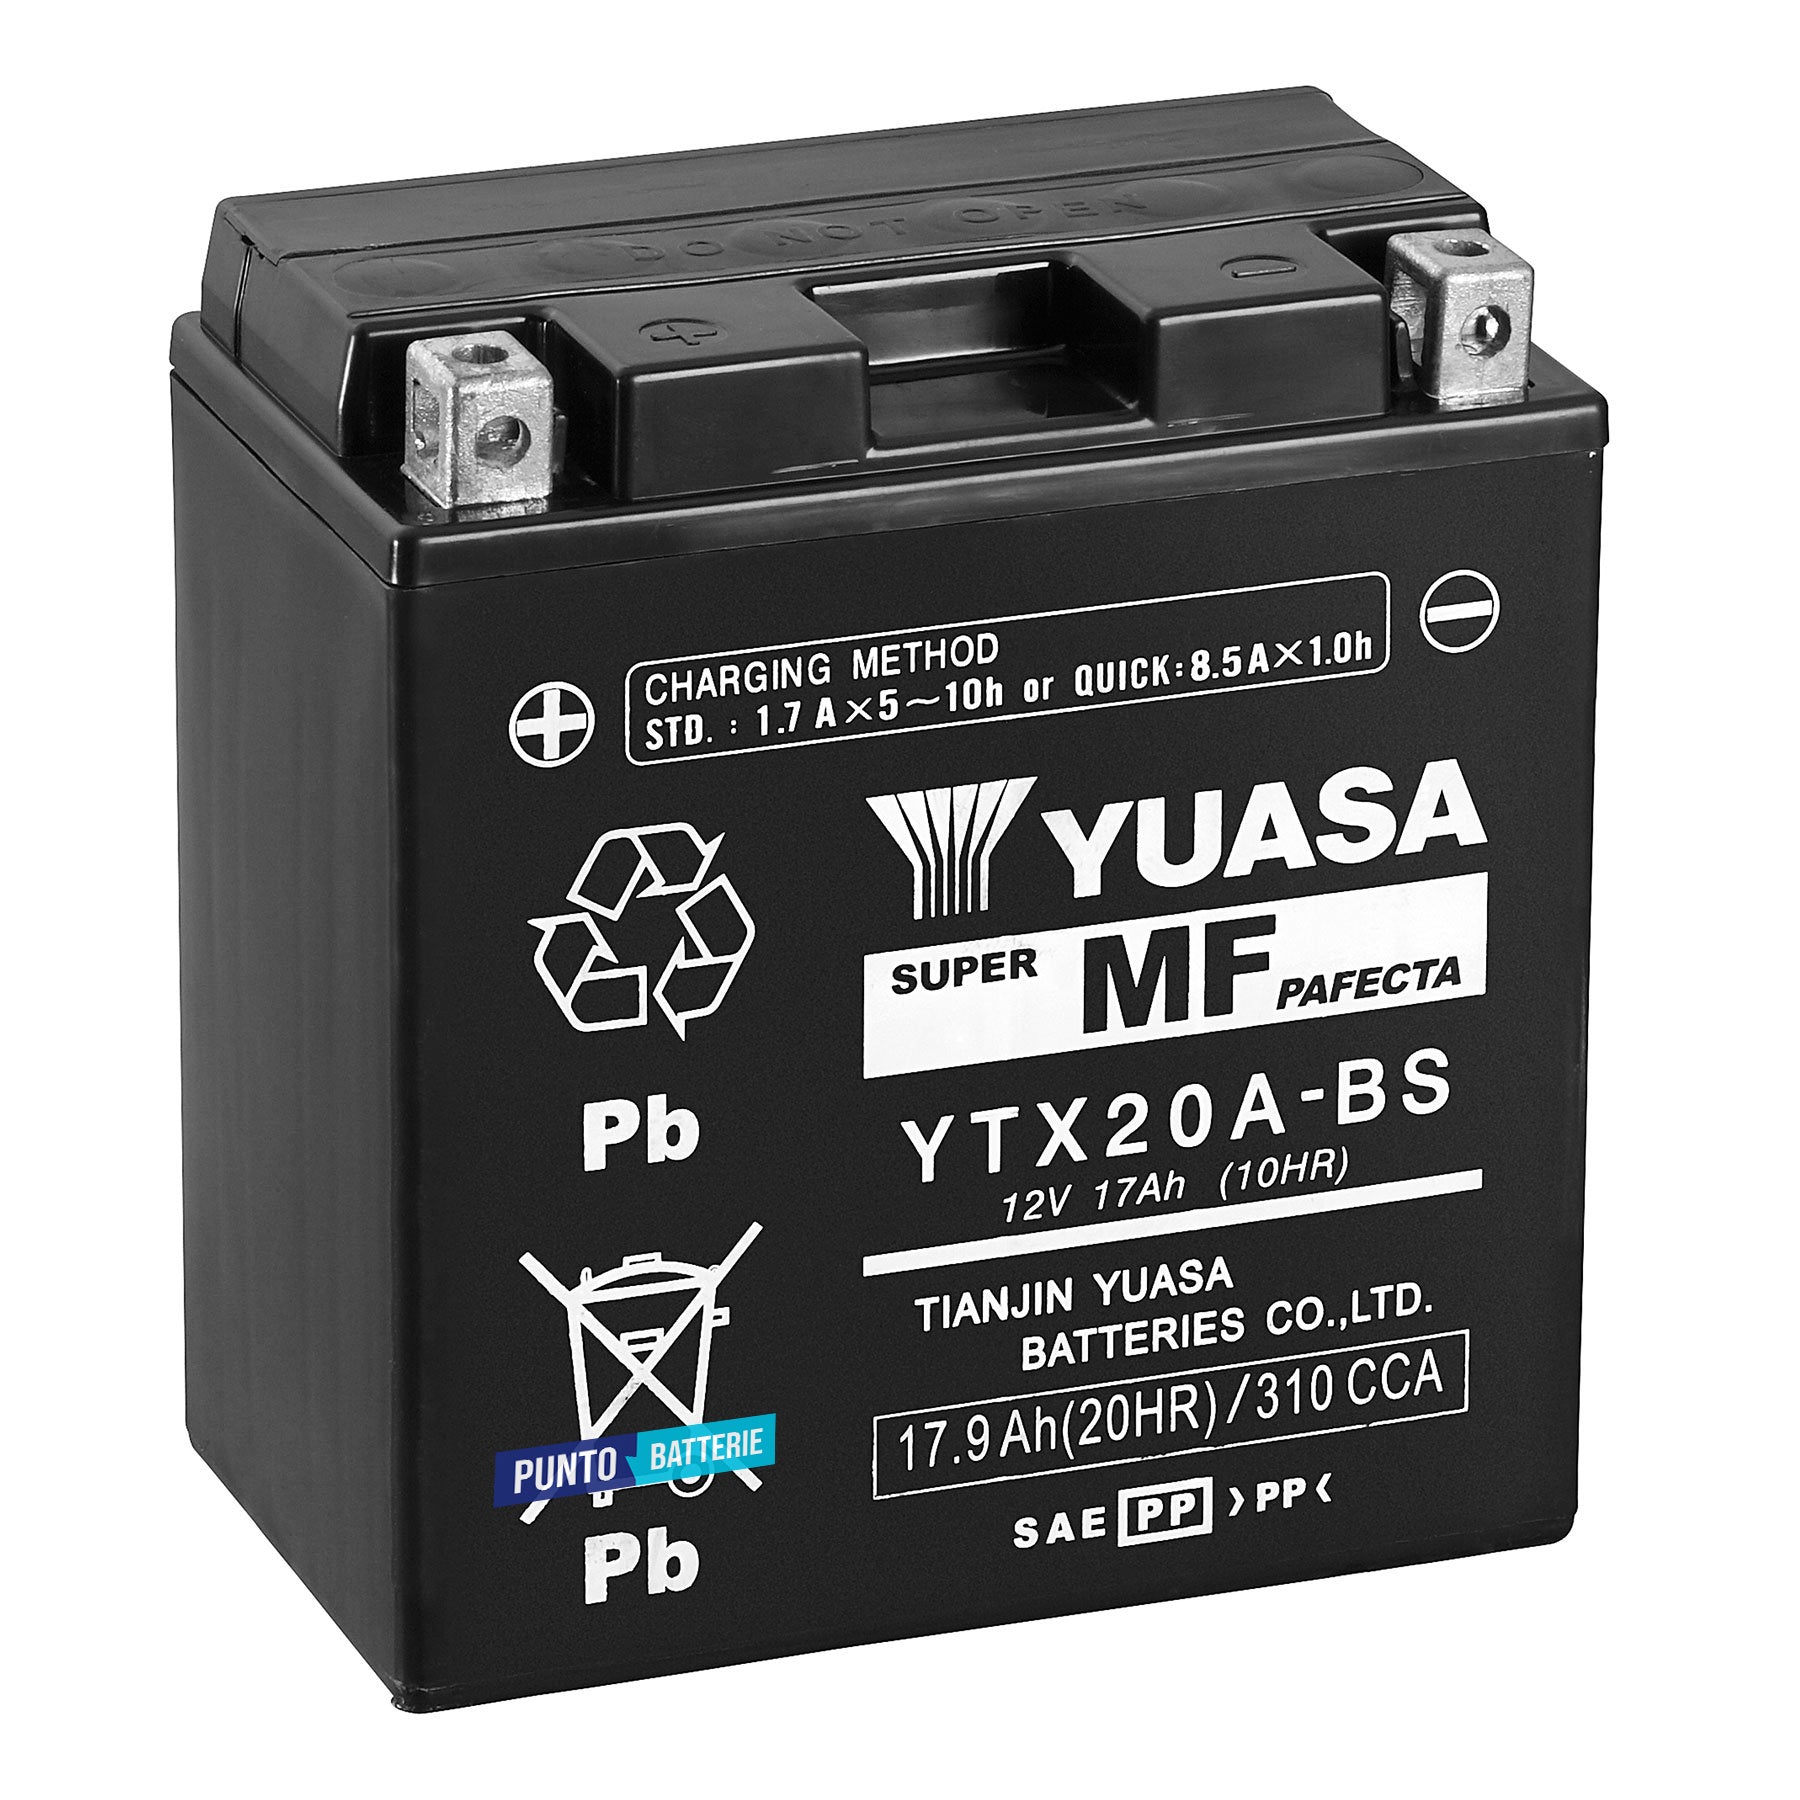 Batteria originale Yuasa YTX YTX20A-BS, dimensioni 150 x 87 x 161, polo positivo a sinistra, 12 volt, 17 amperora, 270 ampere. Batteria per moto, scooter e powersport.